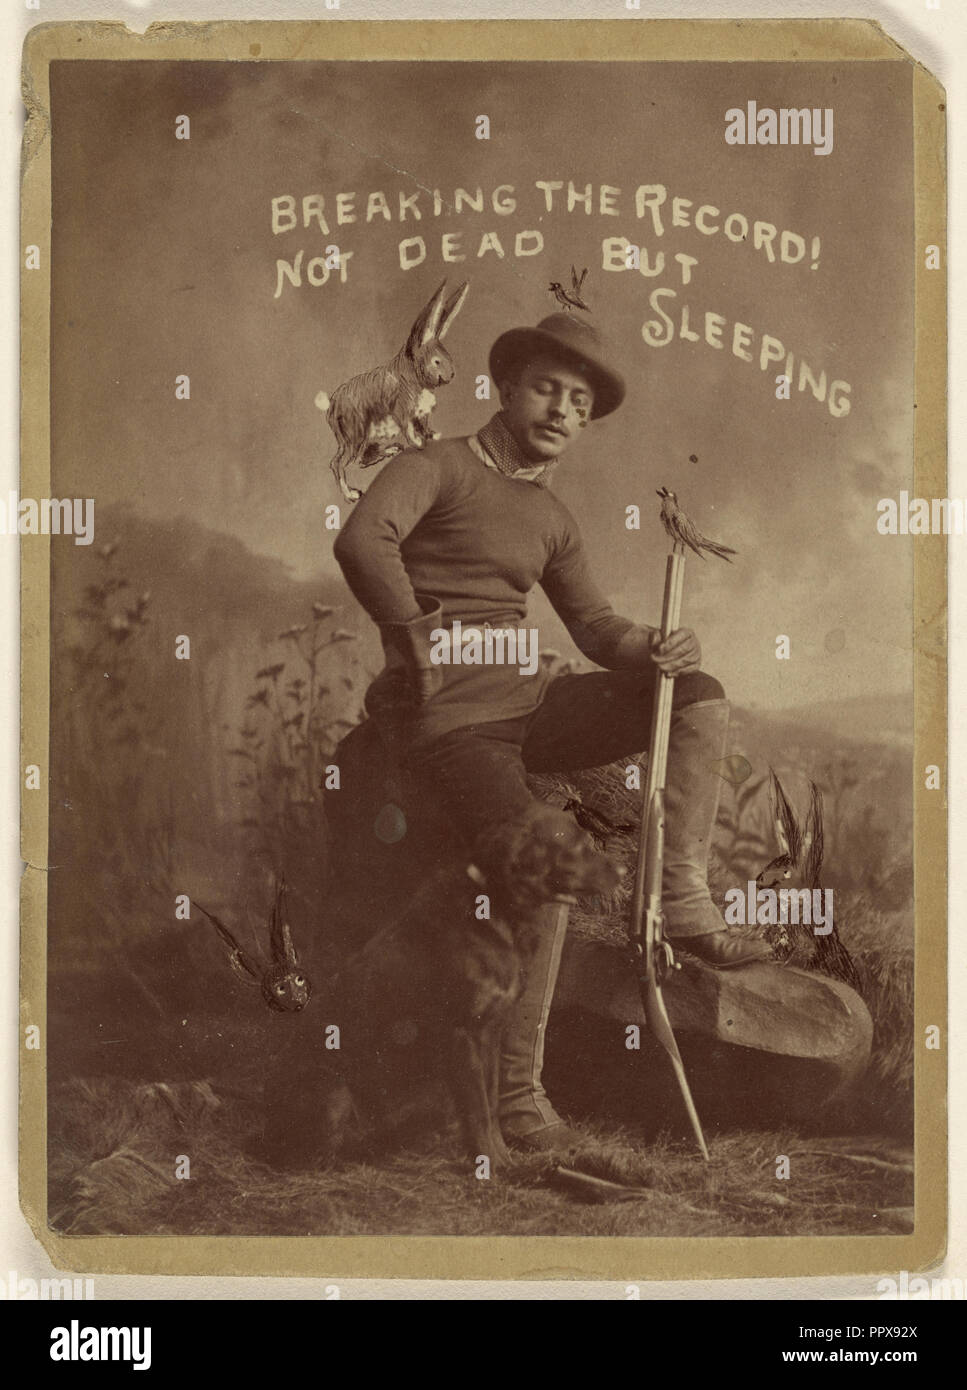 Dem Rekord. Nicht tot, sondern schläft; Amerikanische; 1880; Eiklar silber Drucken Stockfoto